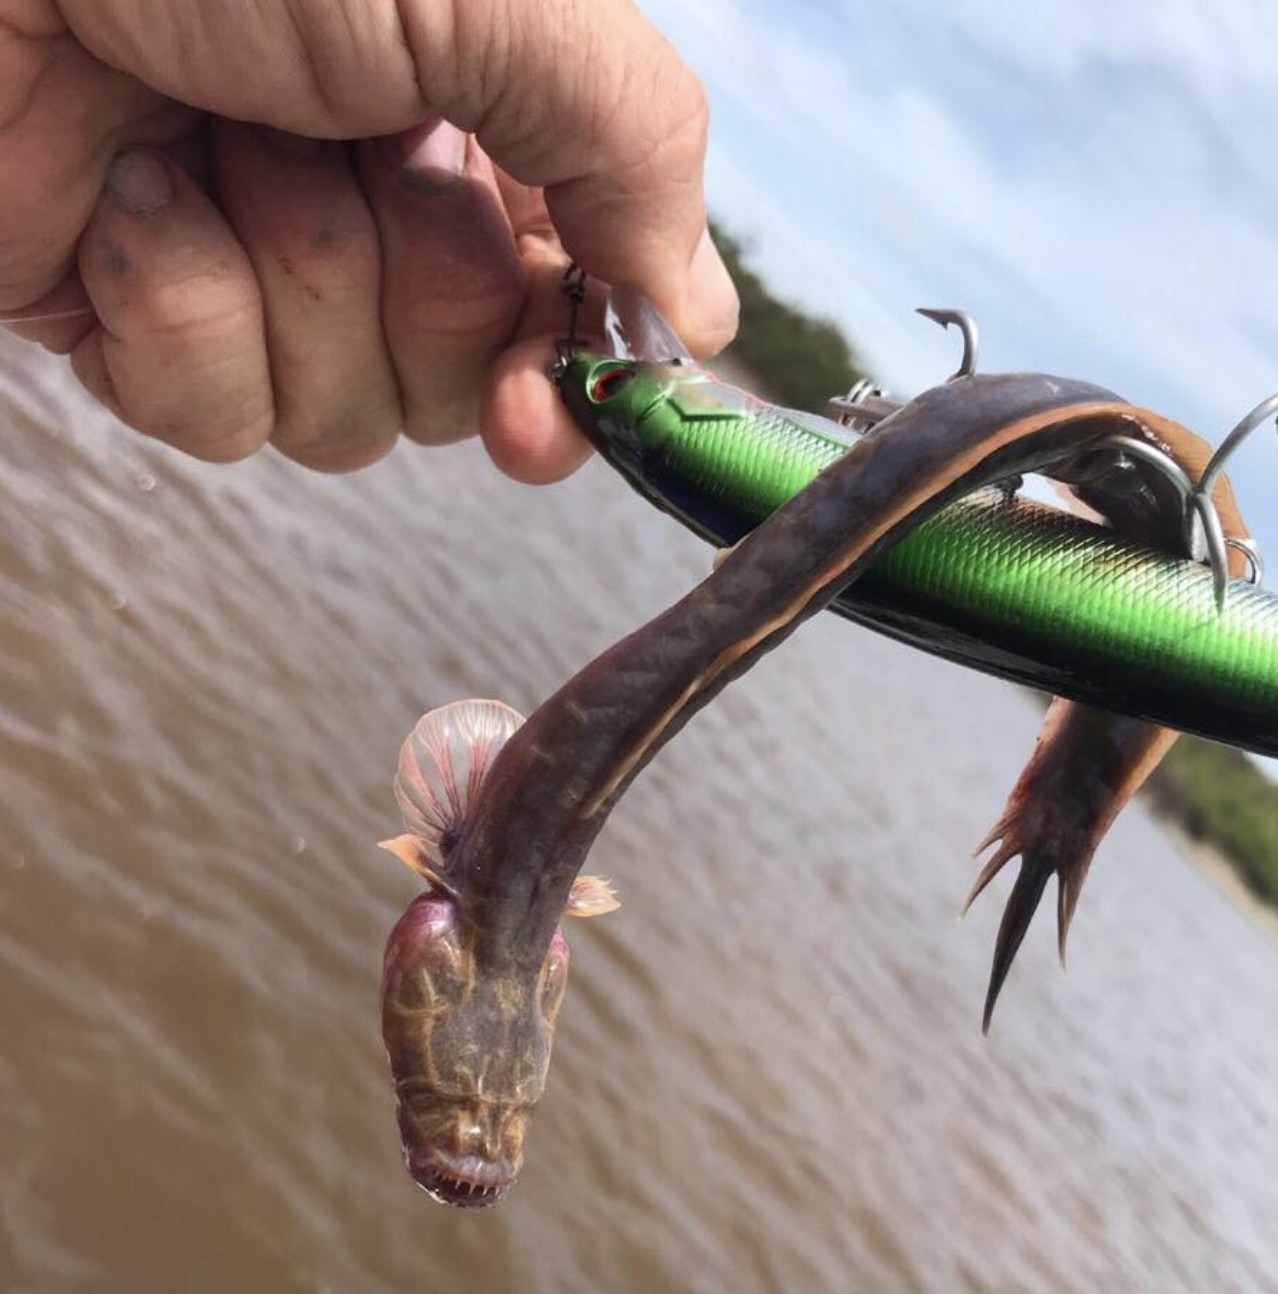 Peixe foi encontrado na Austrália (Foto: Reprodução Facebook/ Outback Boat Hire )